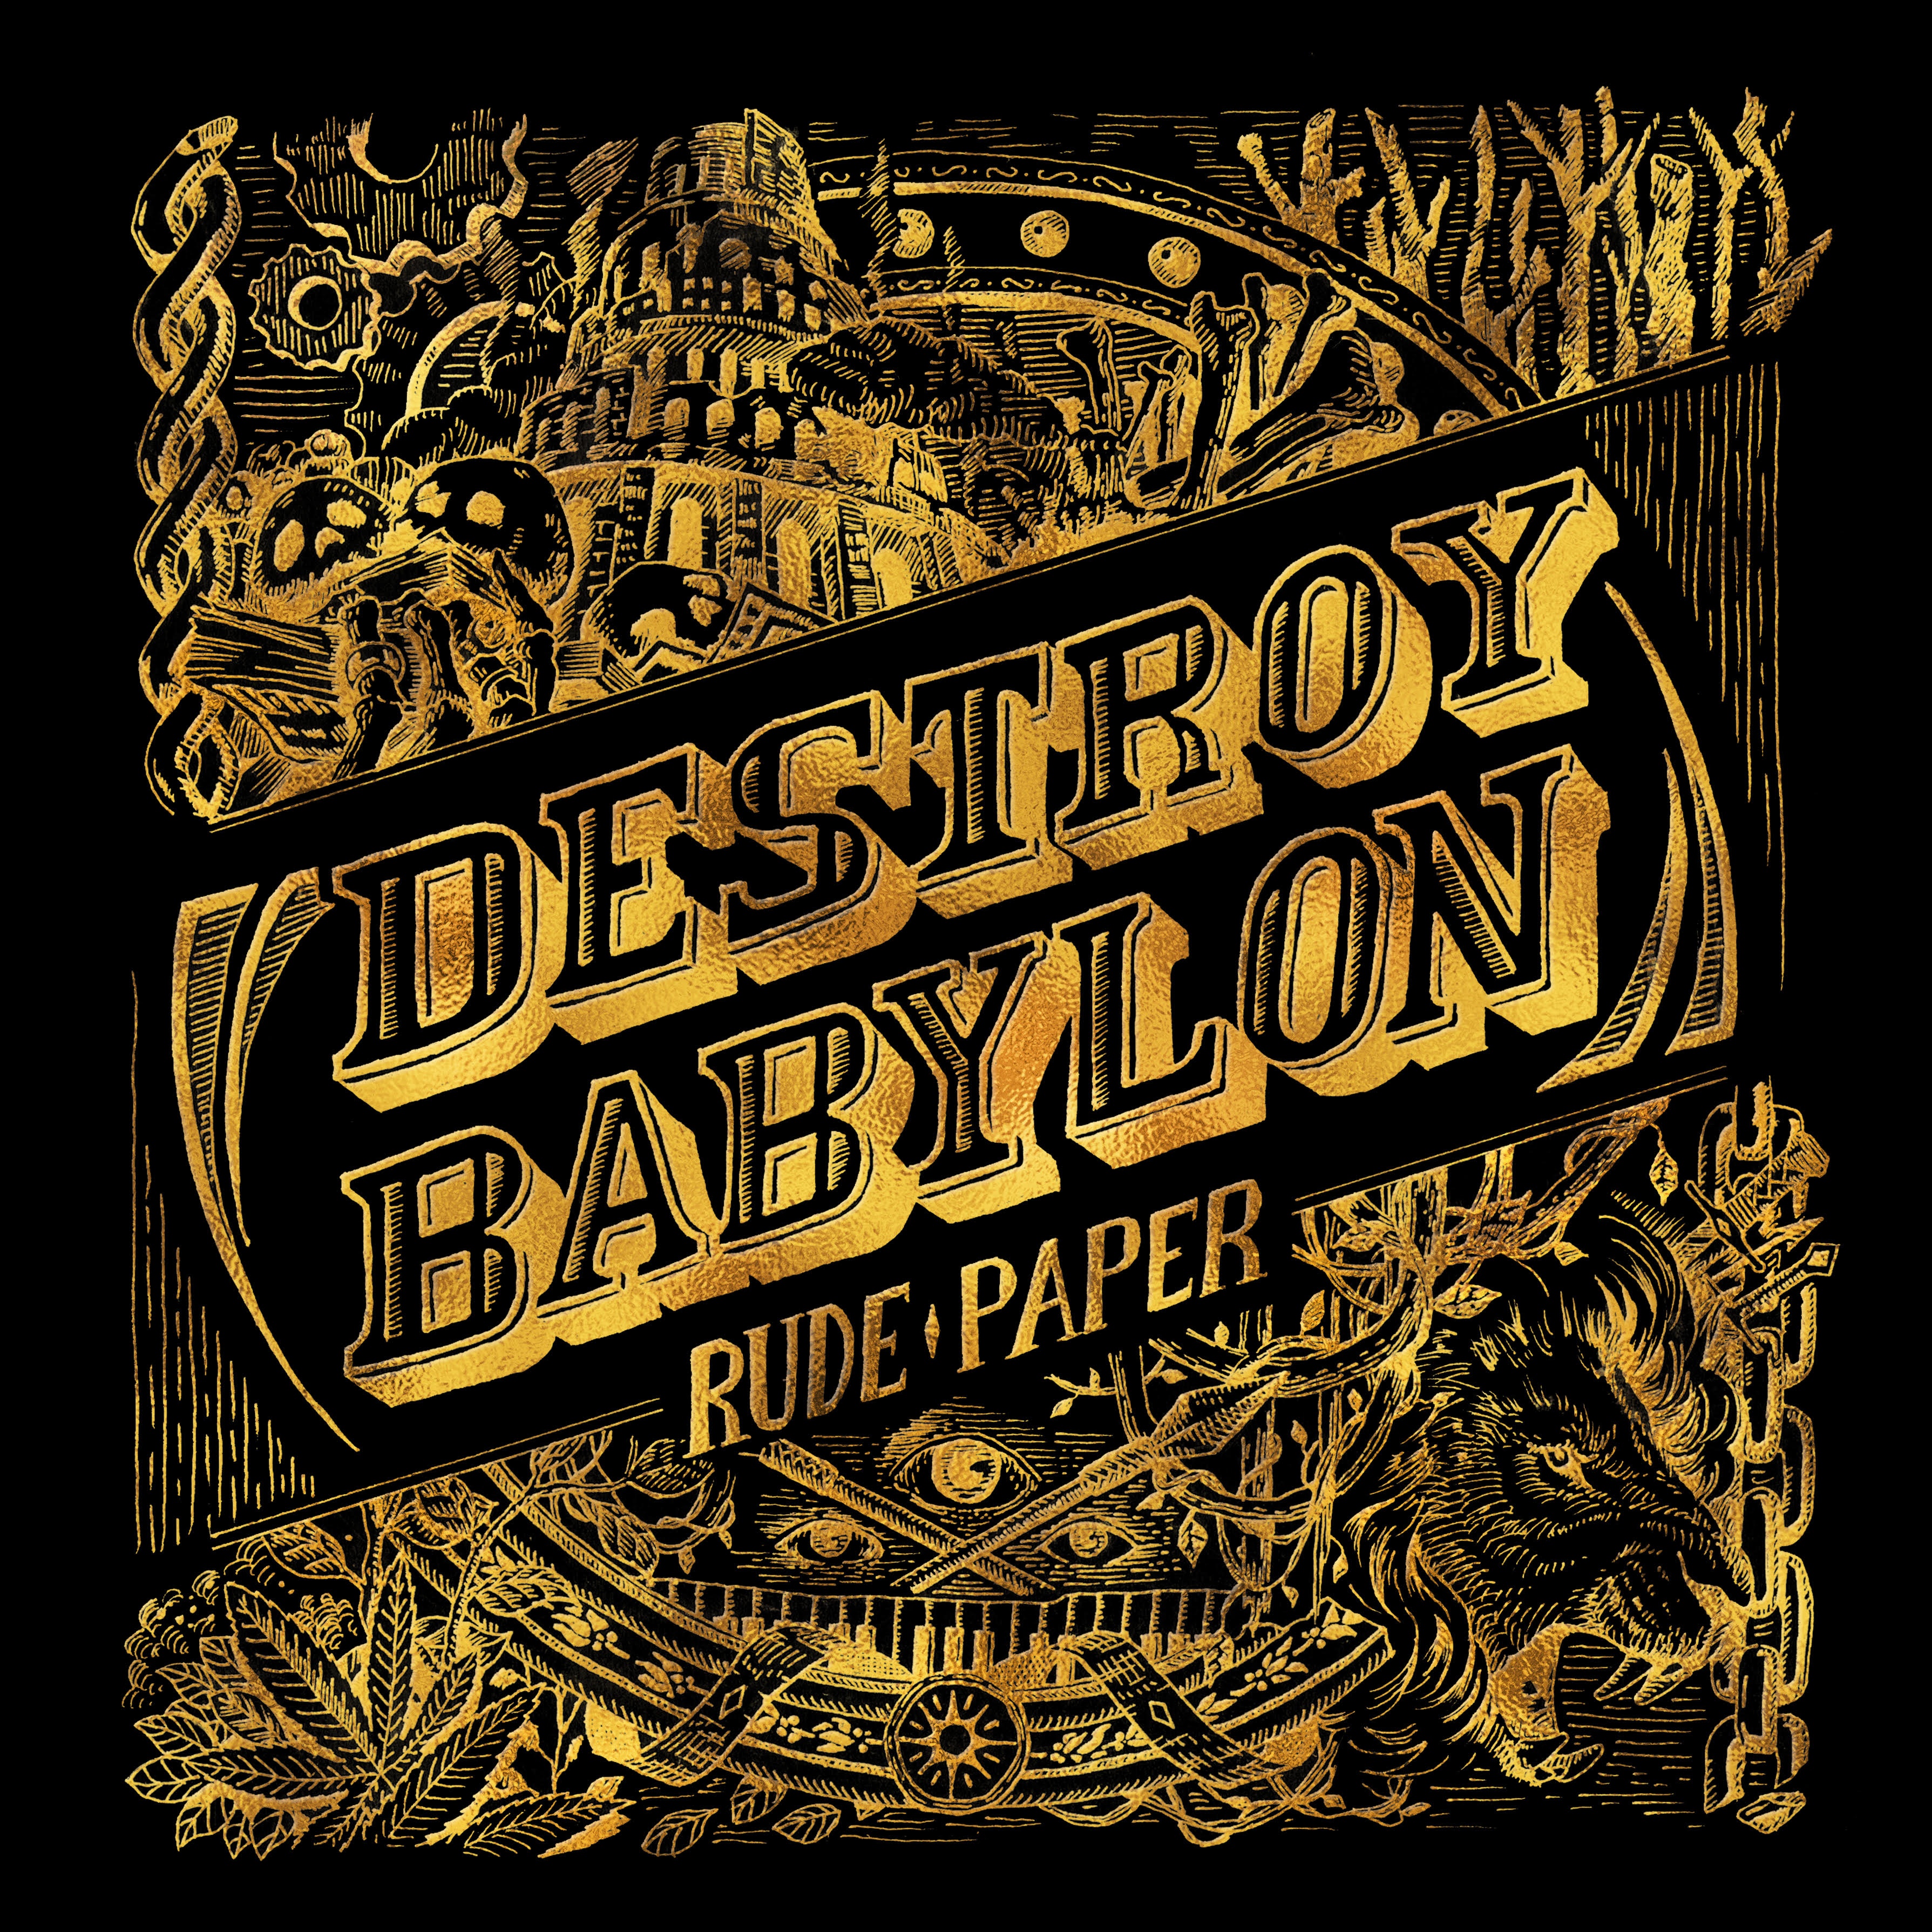 Destroy Babylon